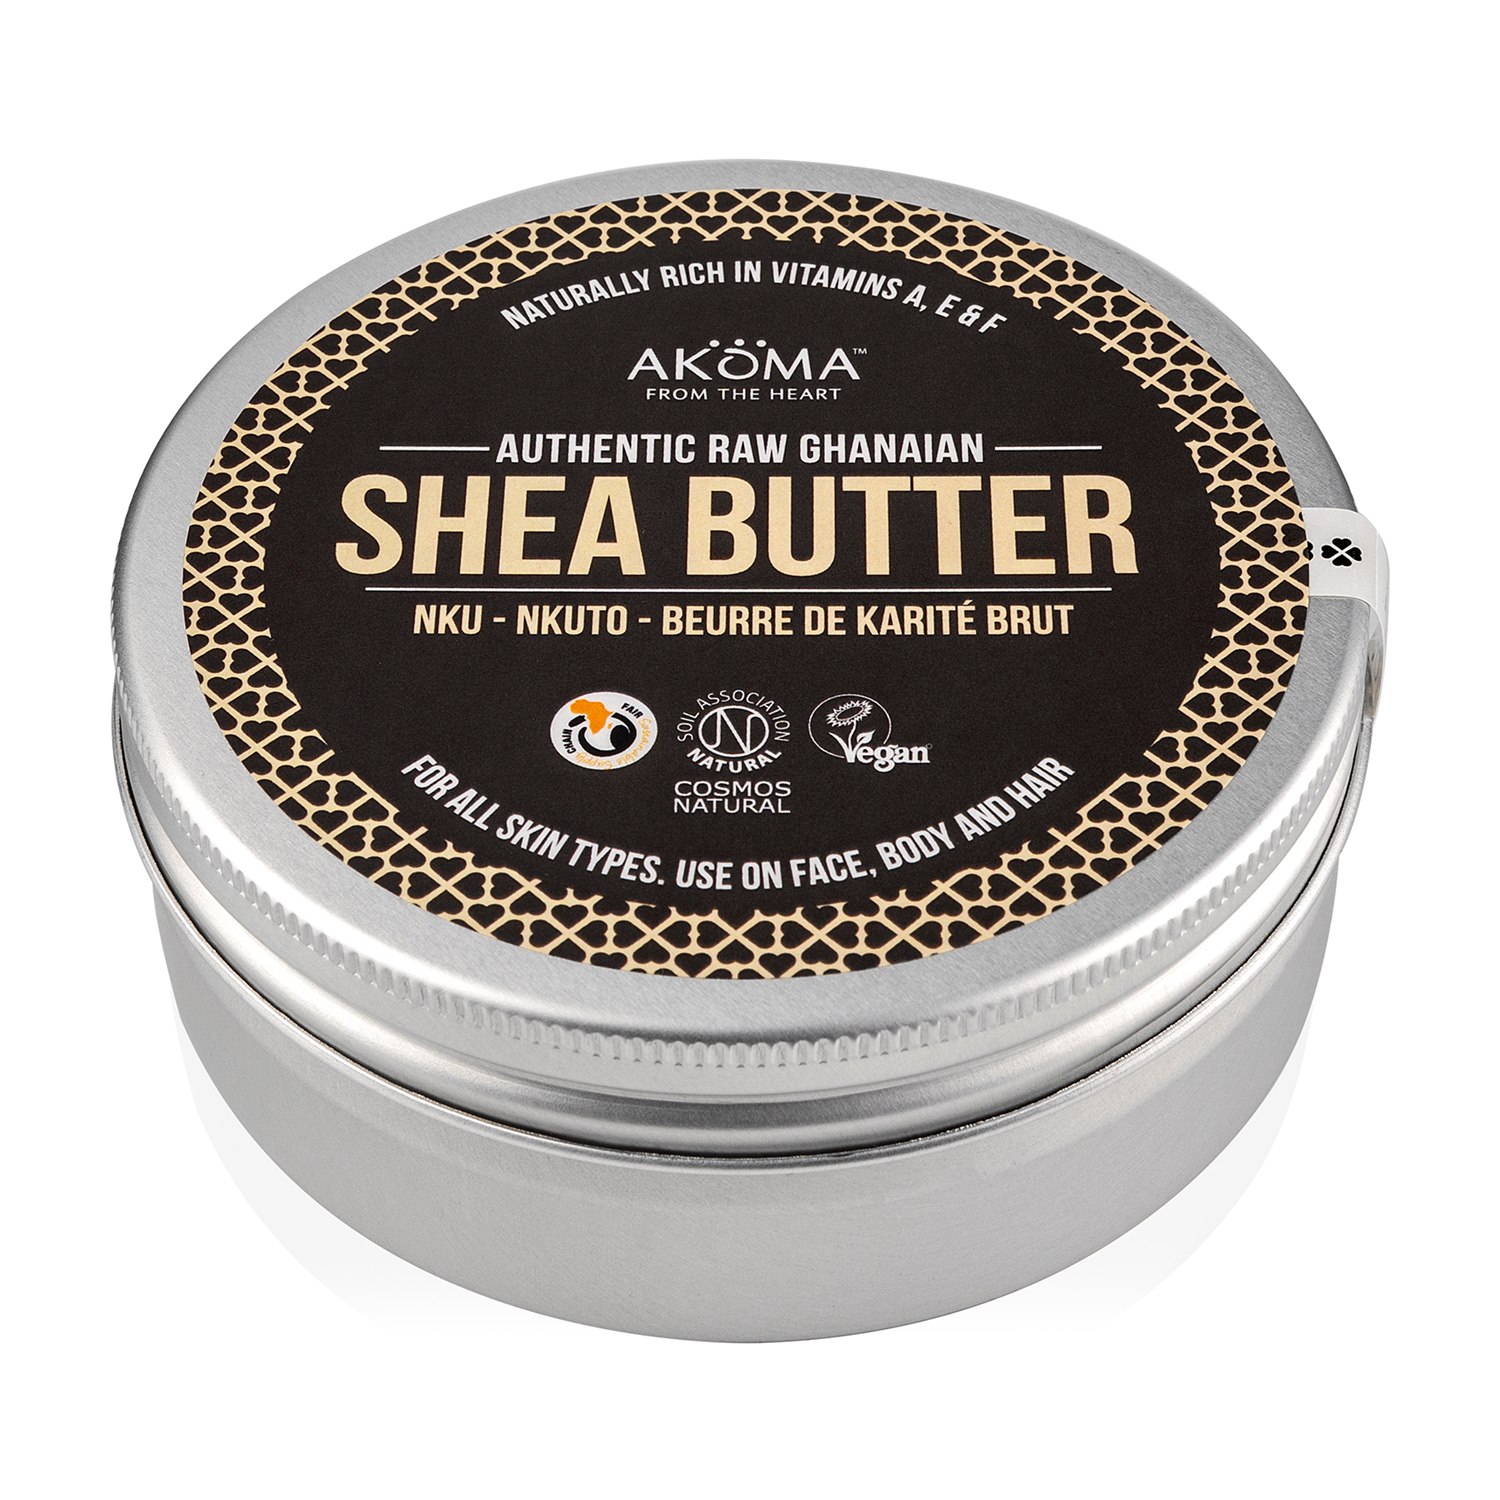 Akoma Original Raw Shea Butter